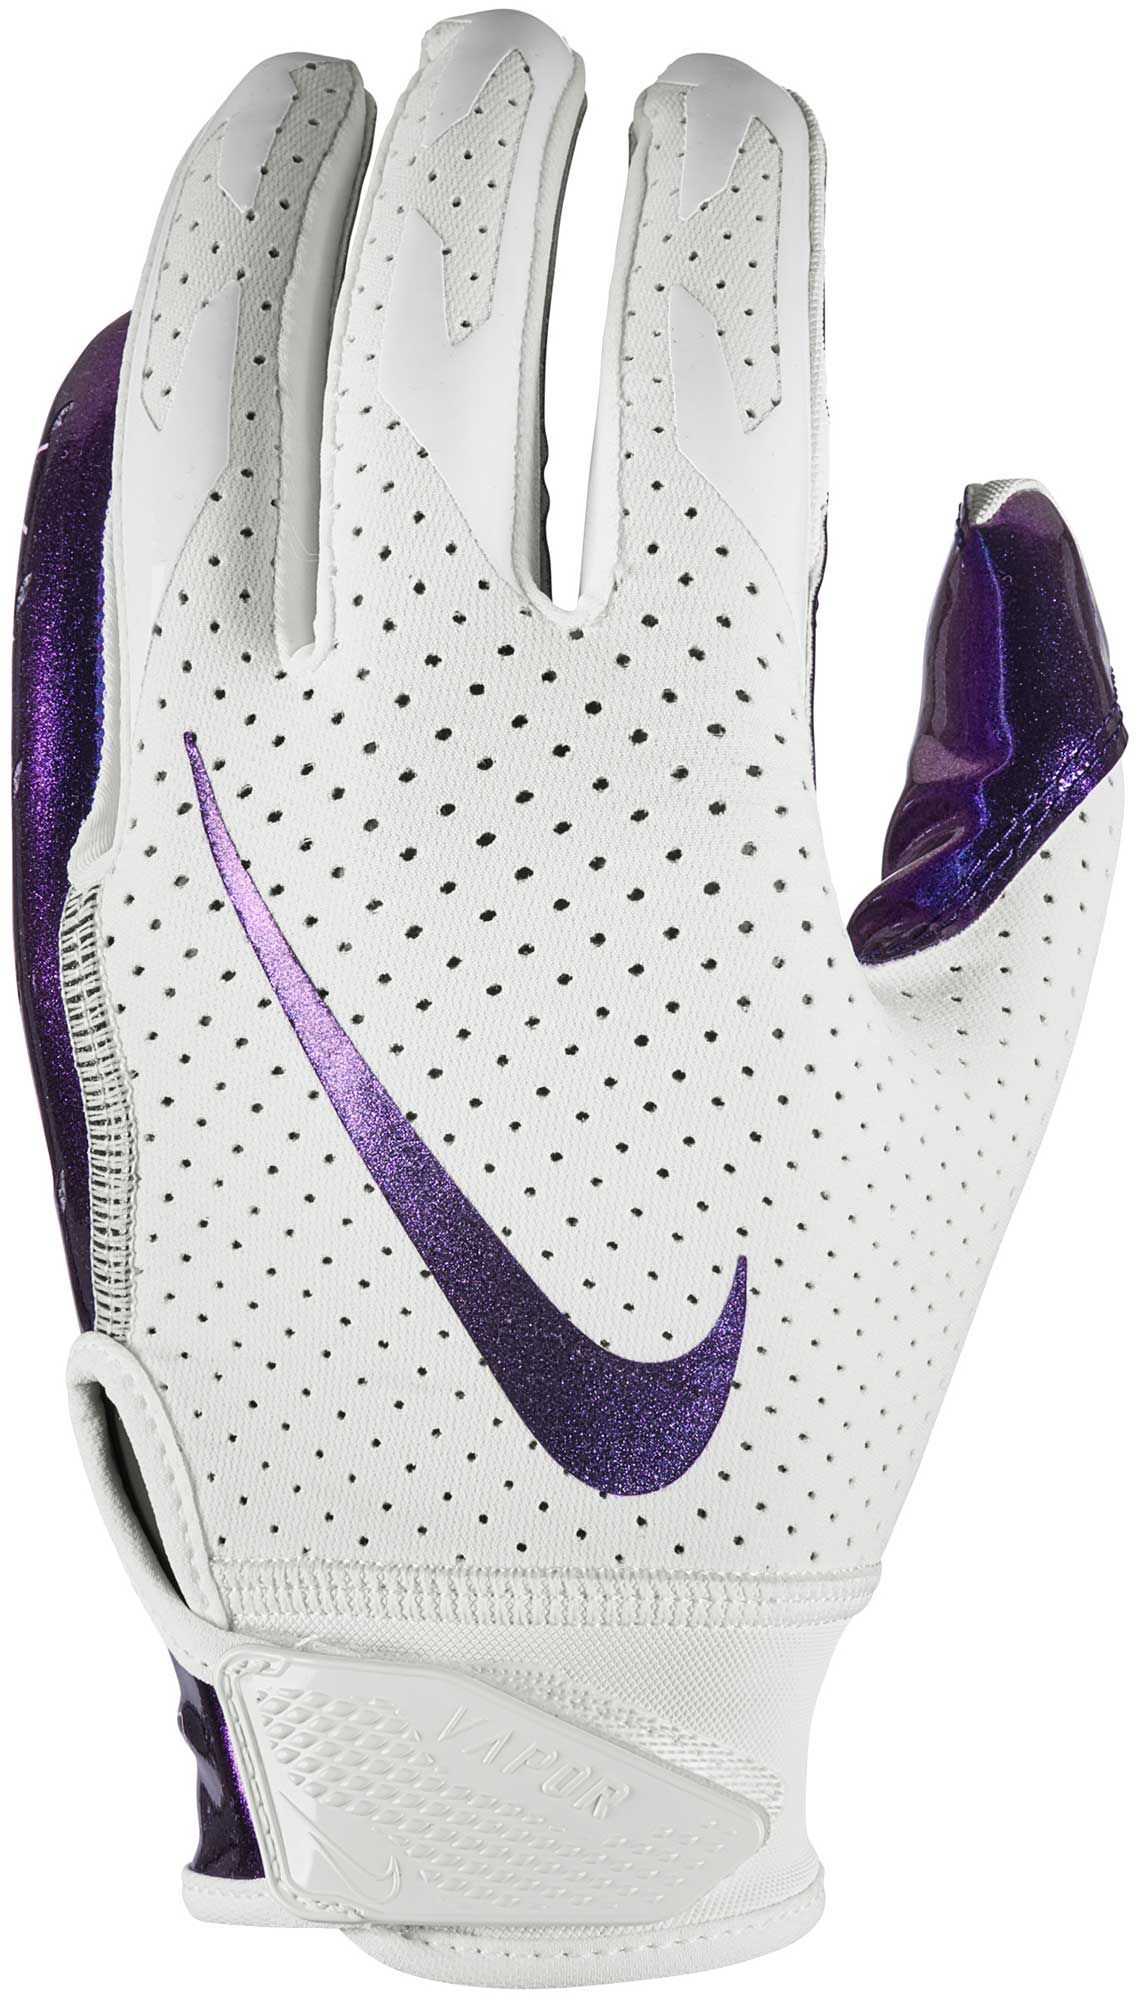 nike vapor 6.0 football gloves